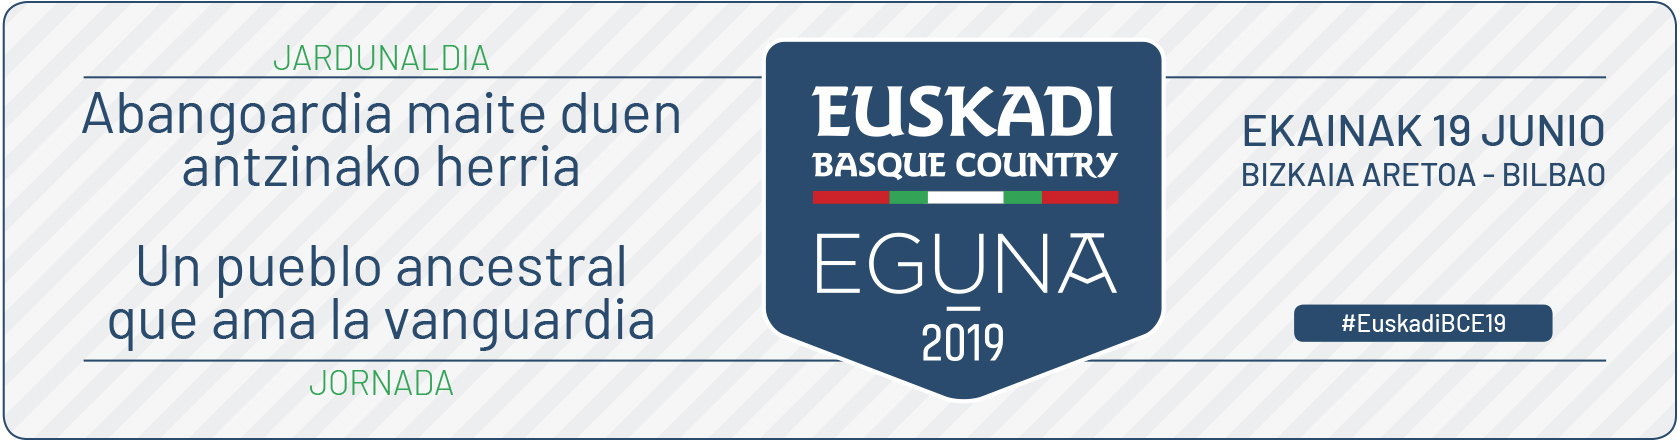 Euskadi Basque Country Eguna